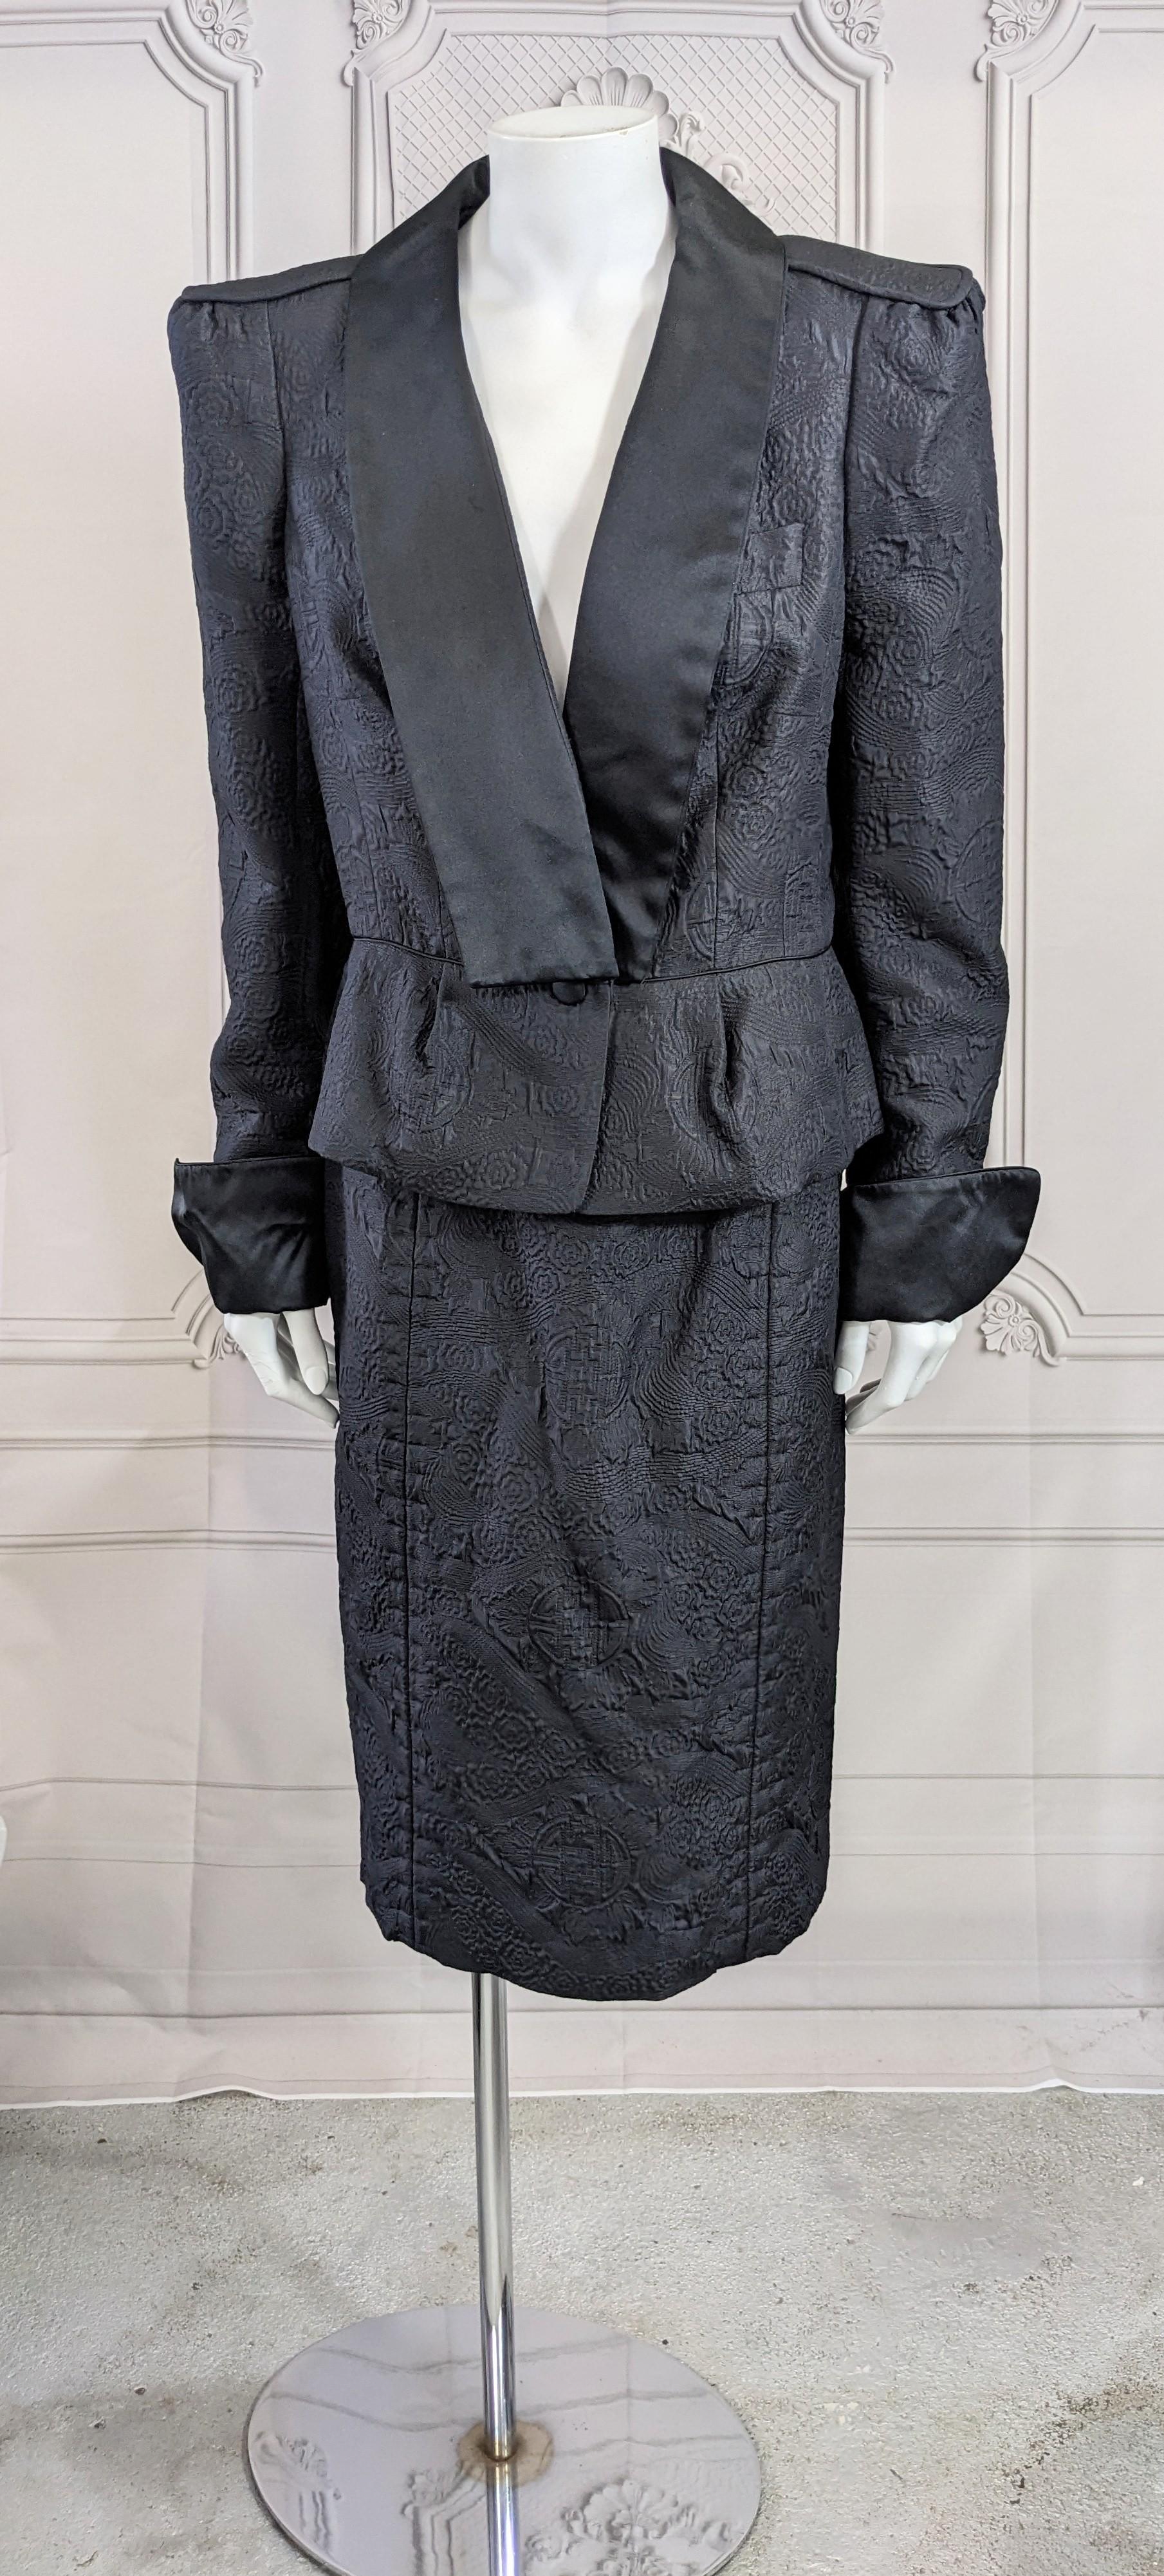 Yves Saint Laurent Rive Gauche by Tom Ford Chinese Collection Suit F/W 2004. Des textiles matelassés en laine/soie personnalisés avec des symboles chinois sont associés à du satin de soie noir en hommage aux combinaisons traditionnelles chinoises.